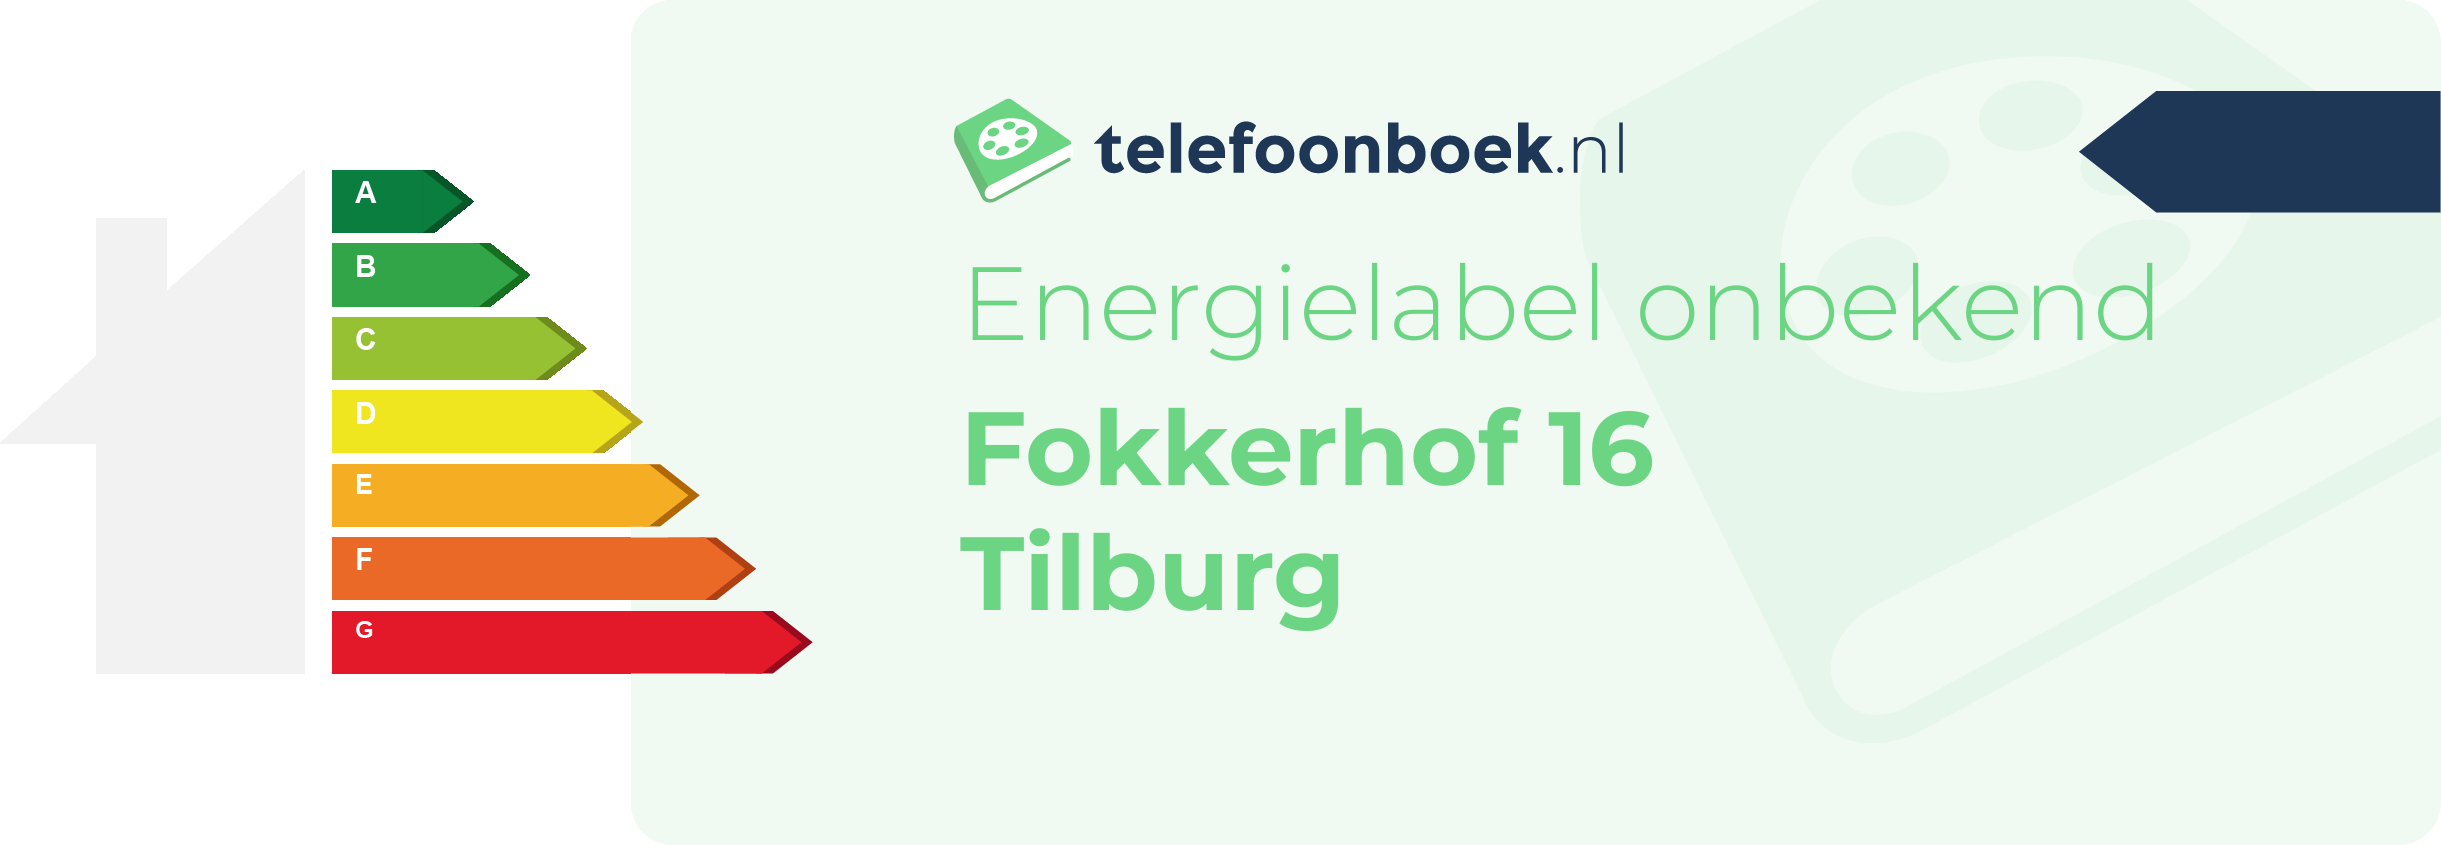 Energielabel Fokkerhof 16 Tilburg